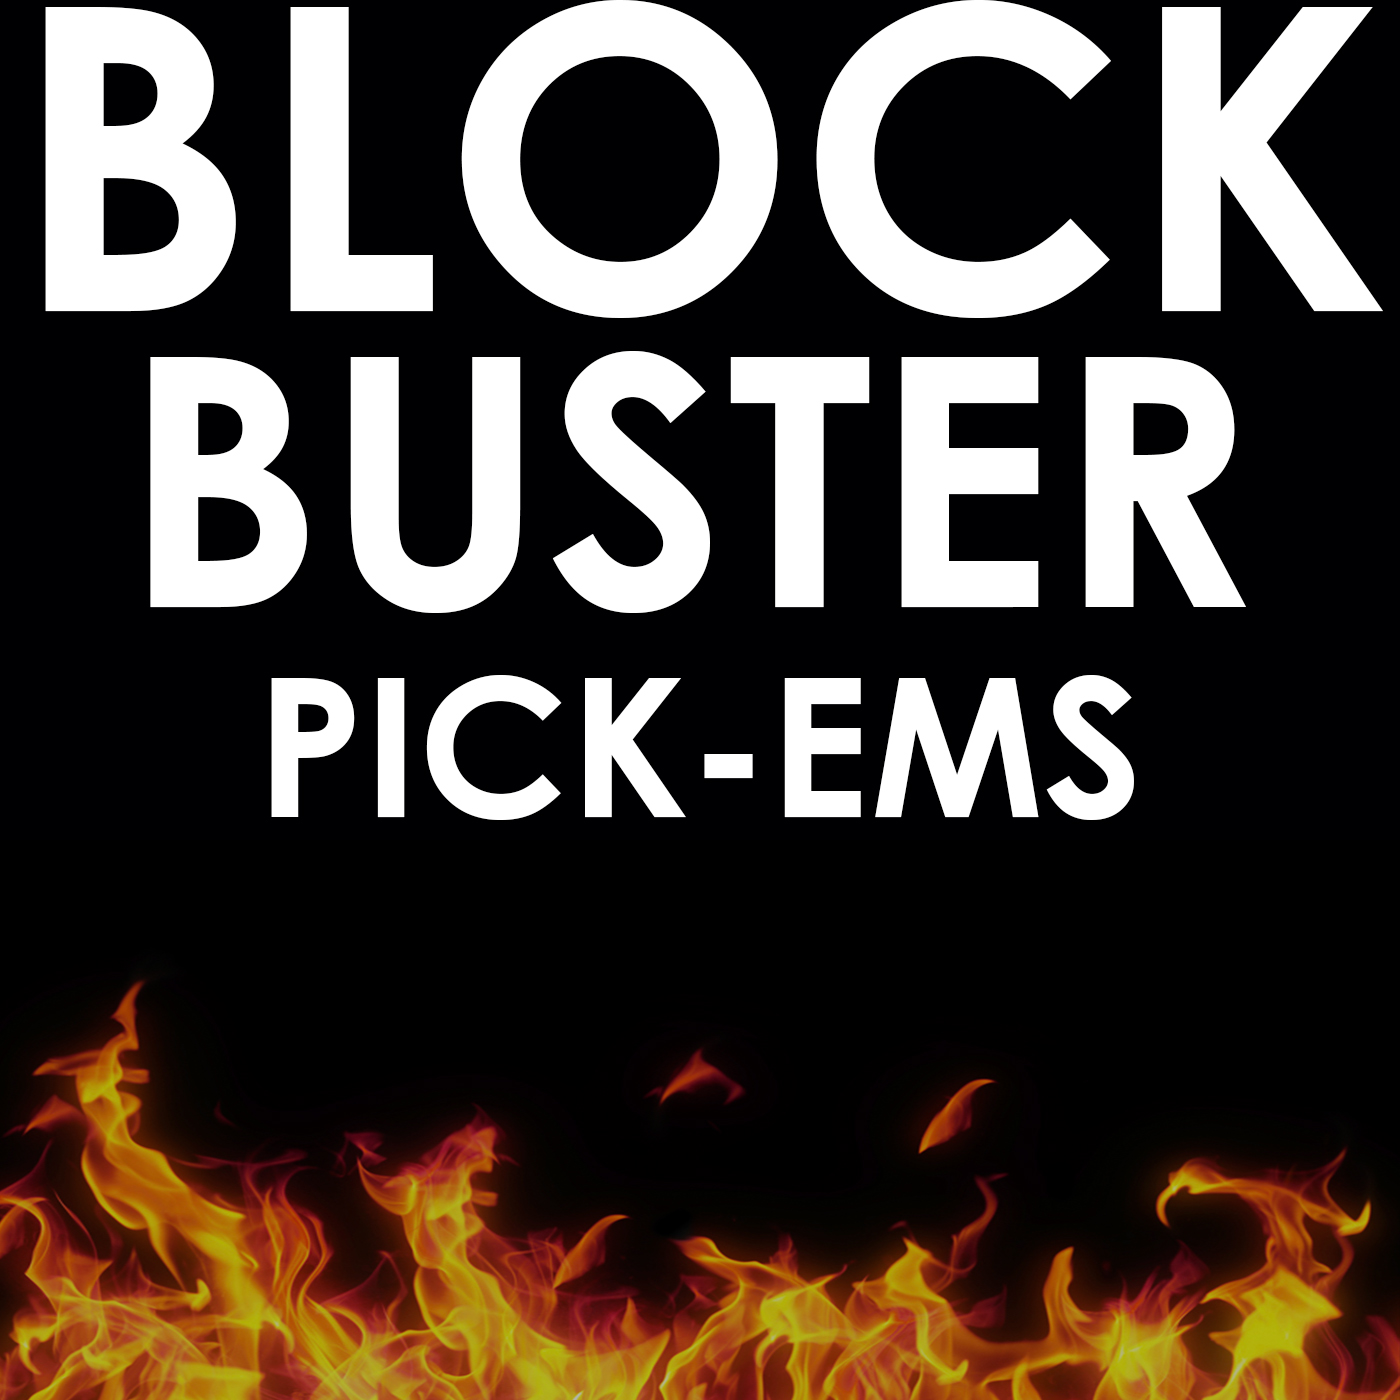 Blockbuster Pick-ems Episode 7